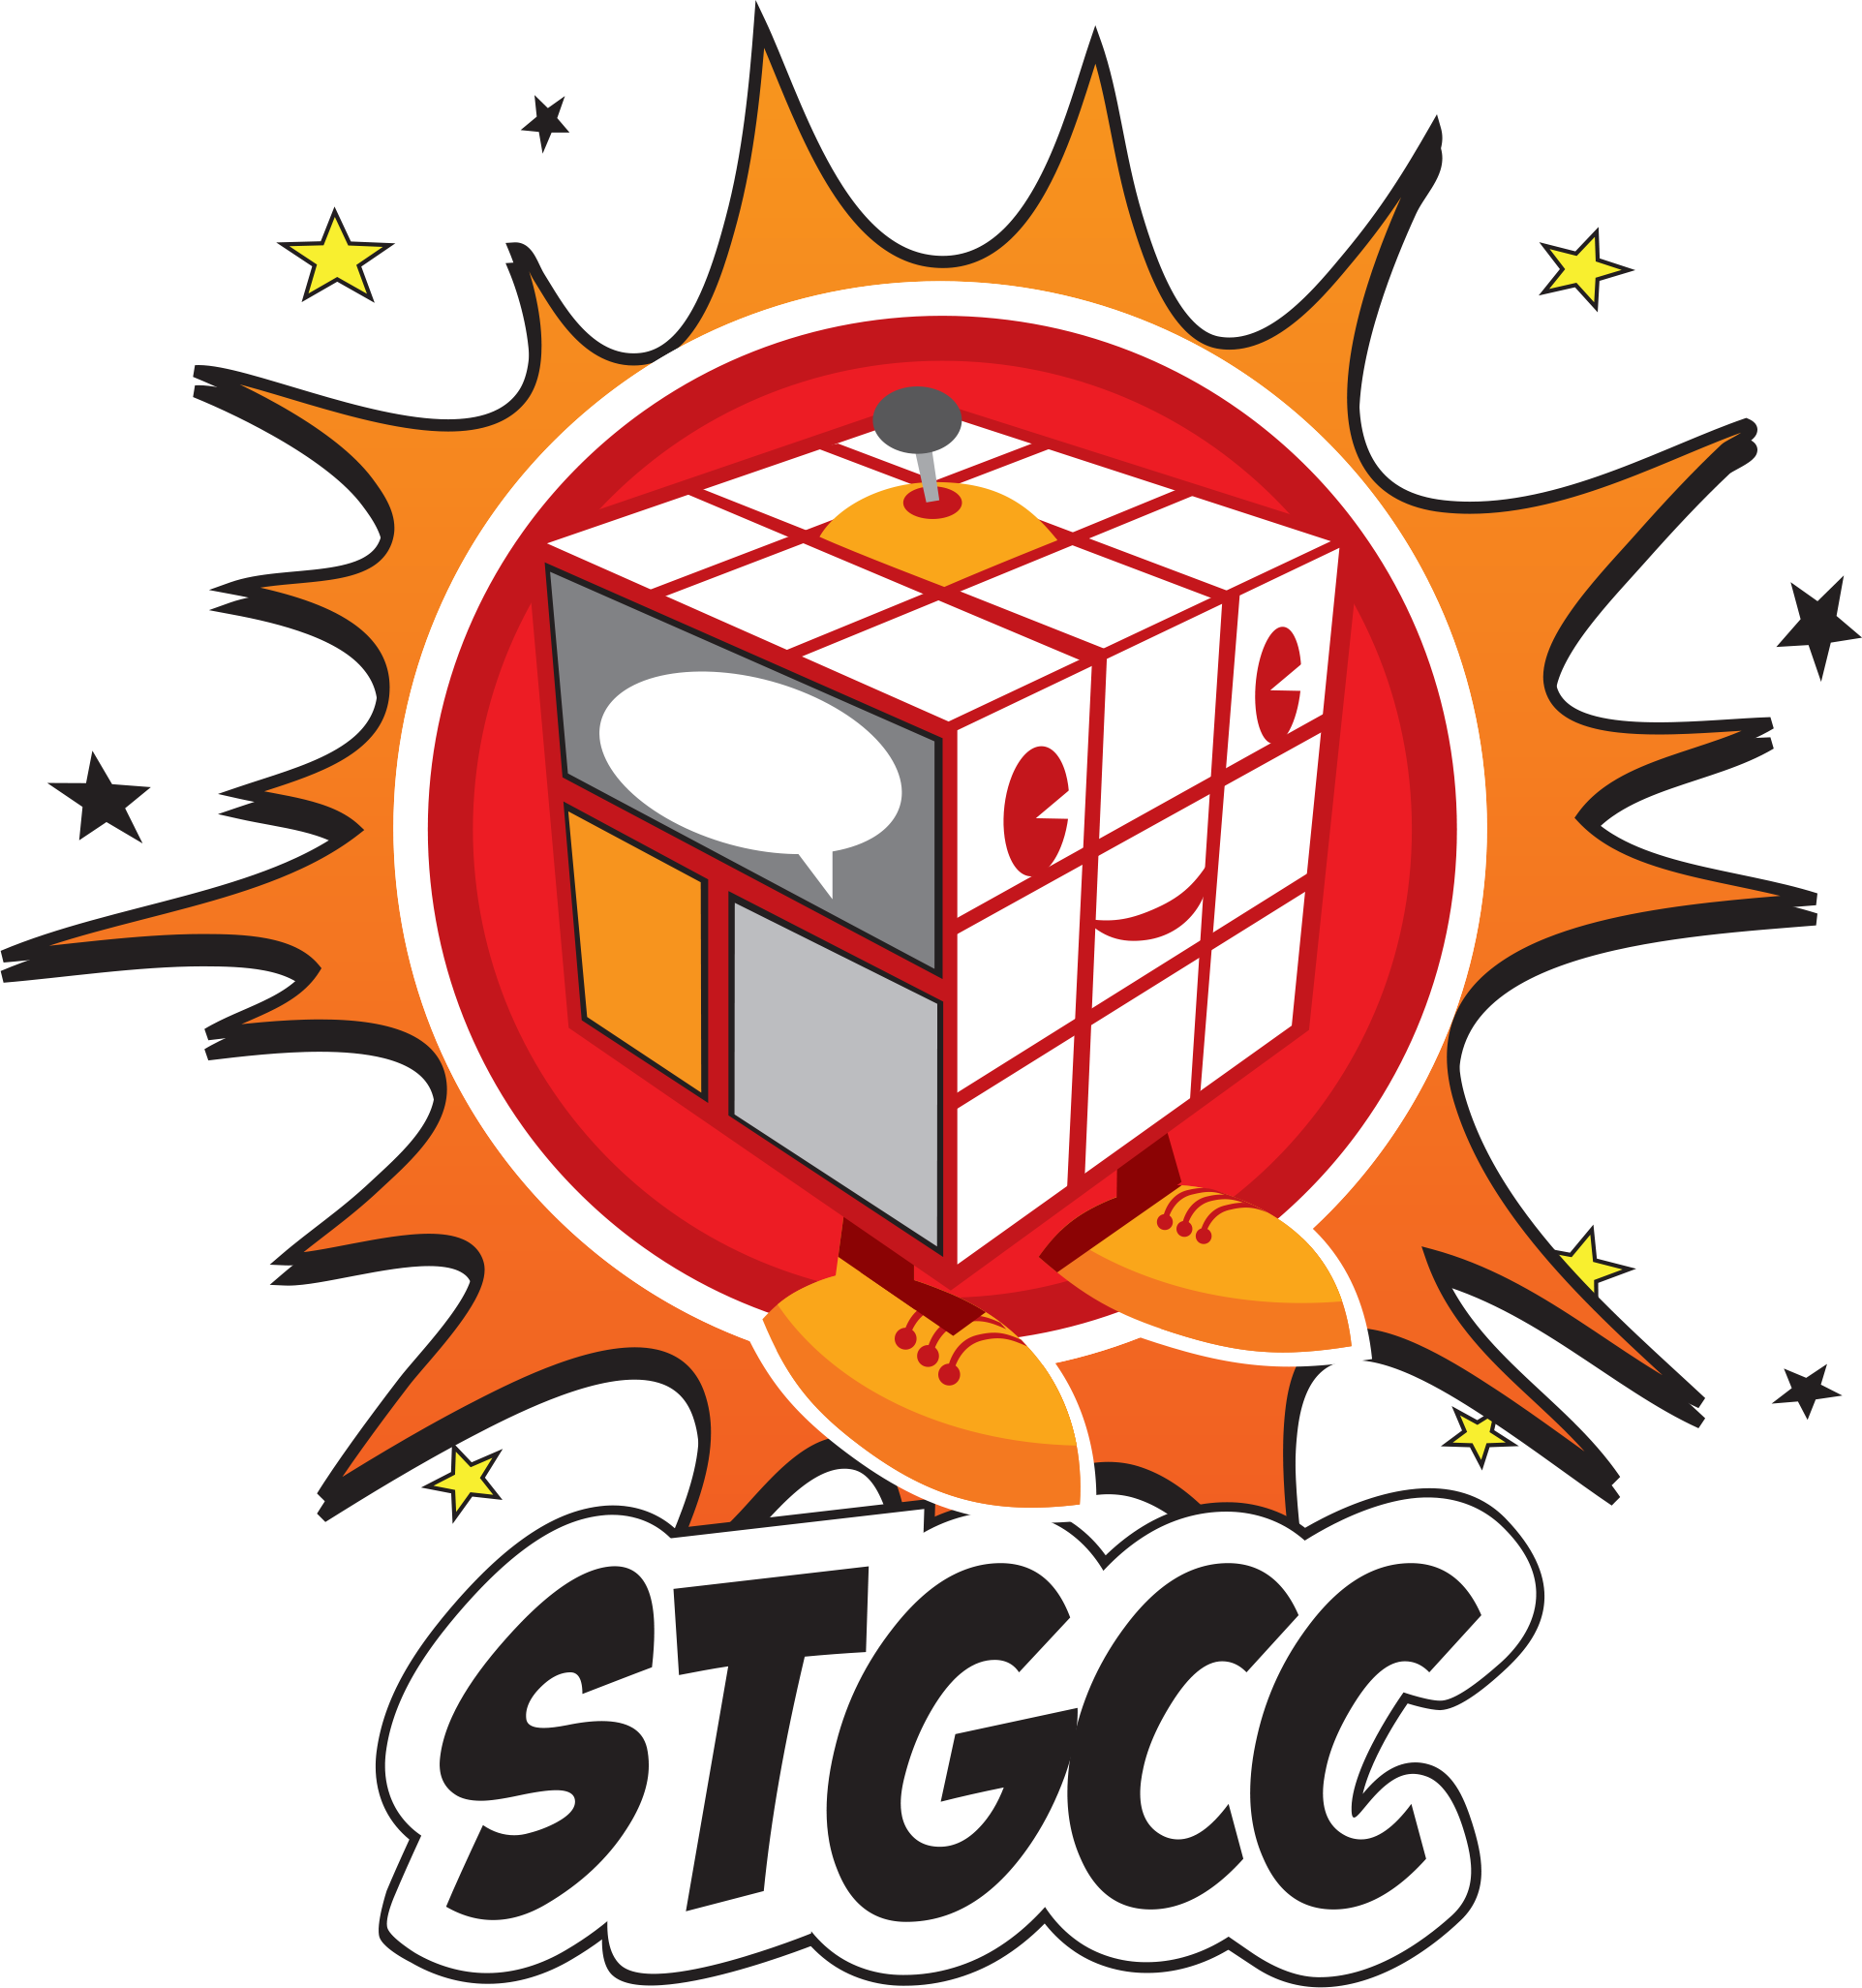 STGCC